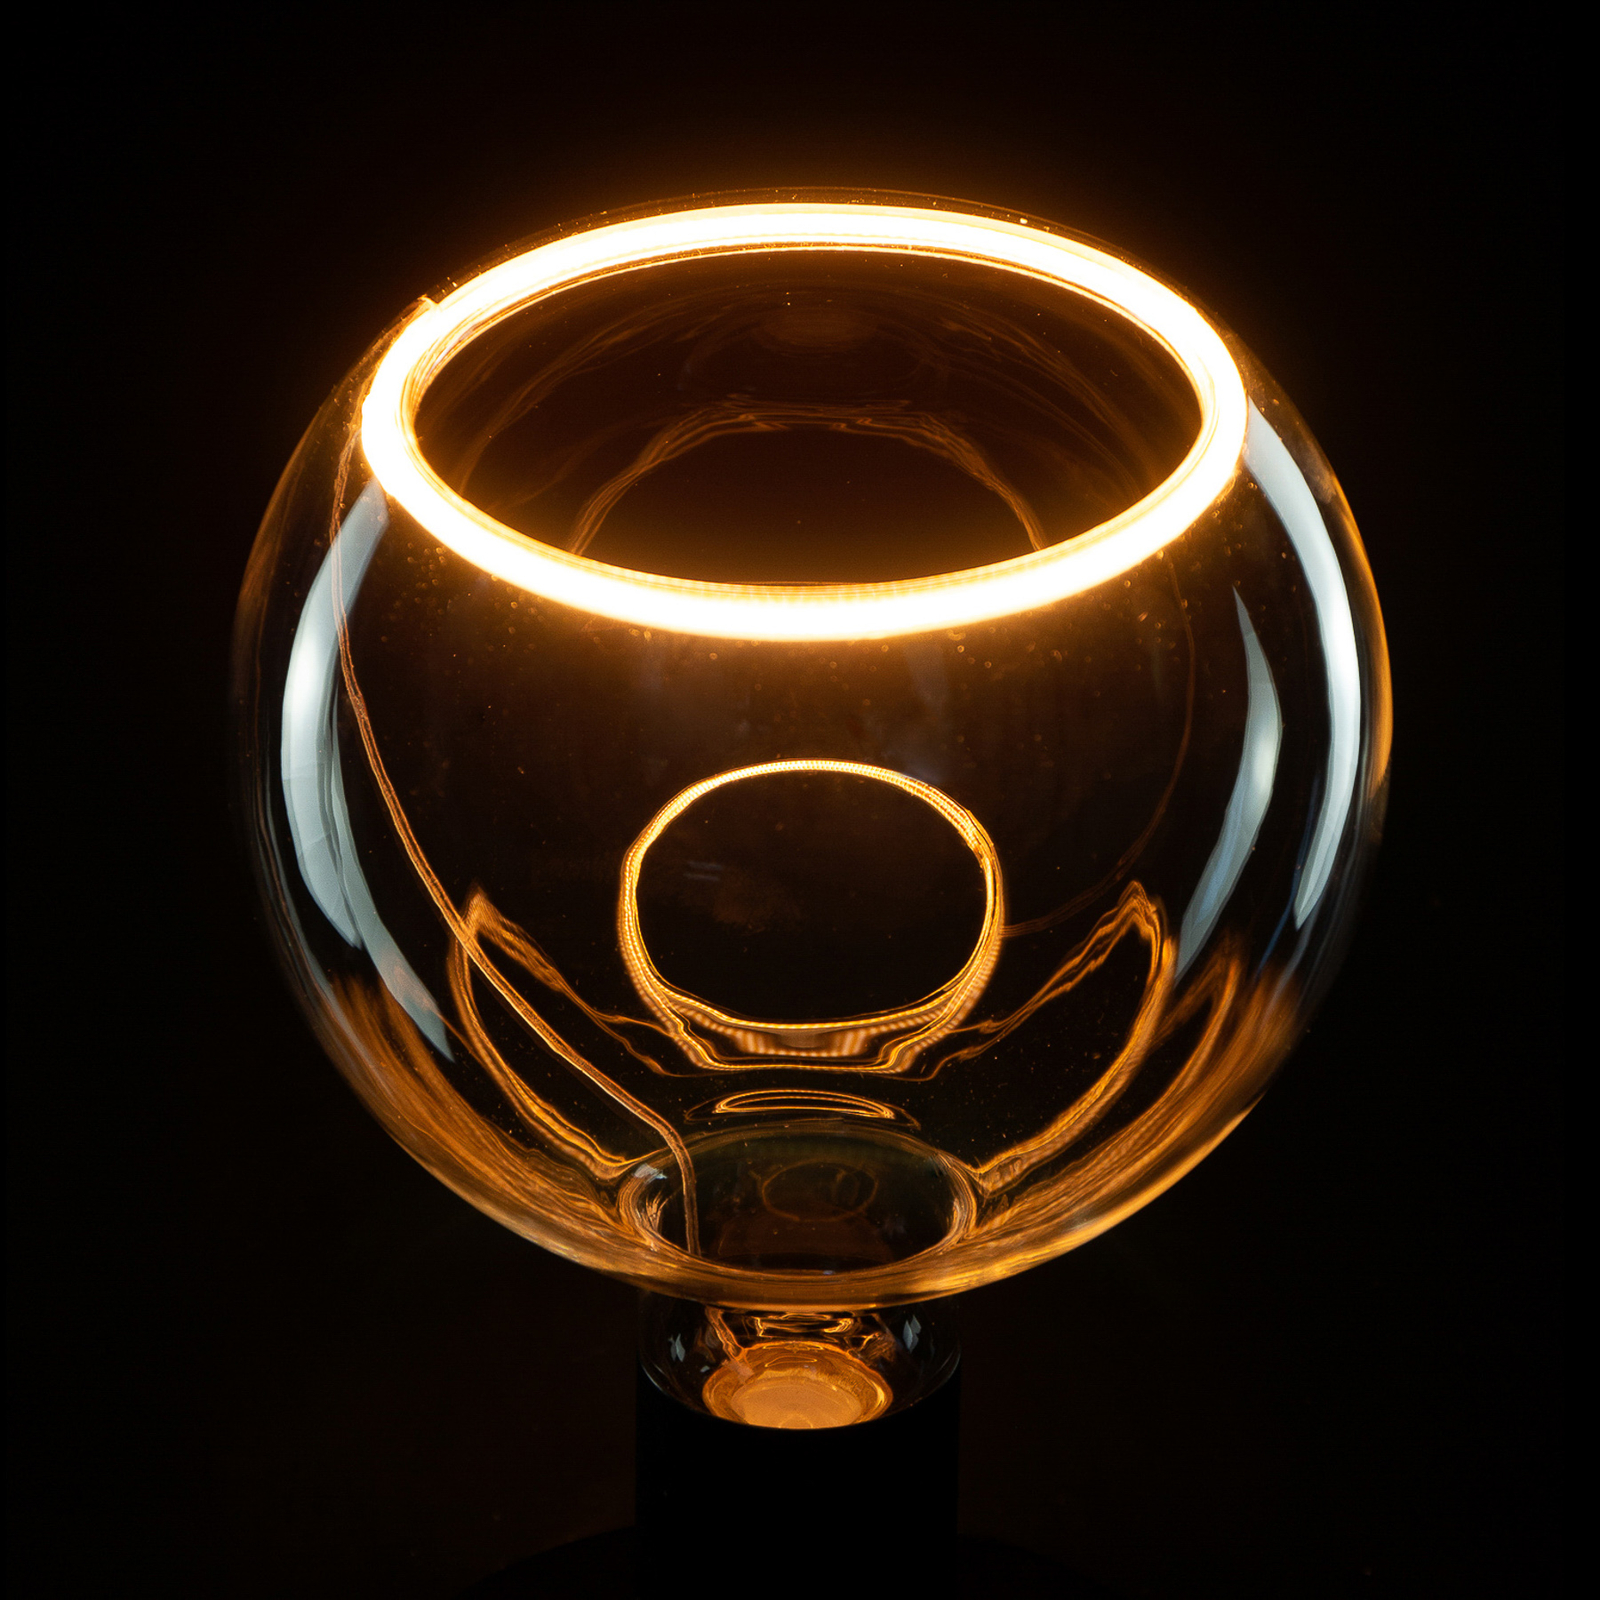 SEGULA LED-Floating-Globelampe G150 E27 4,5W klar